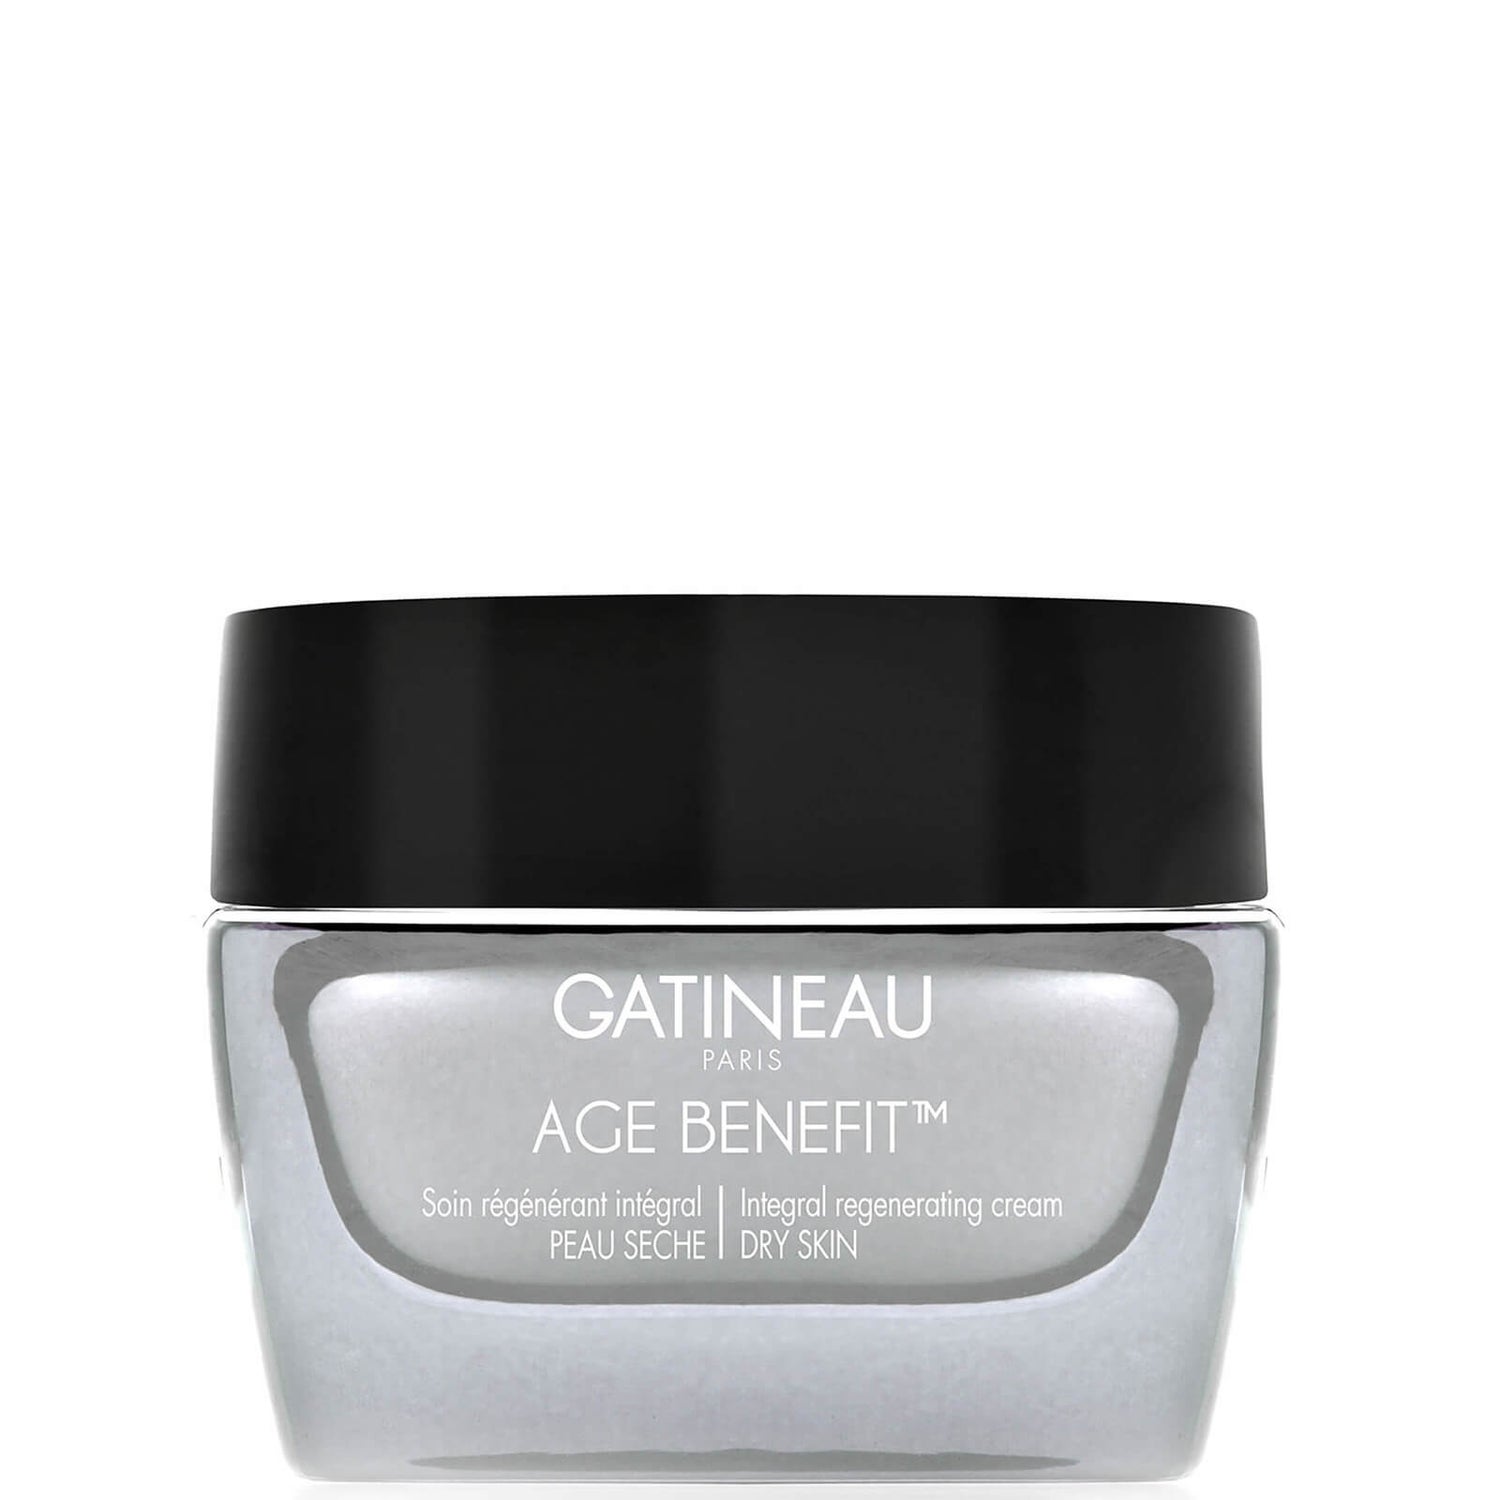 Gatineau Age Benefit crema rigenerazione integrale pelle secca 50 ml